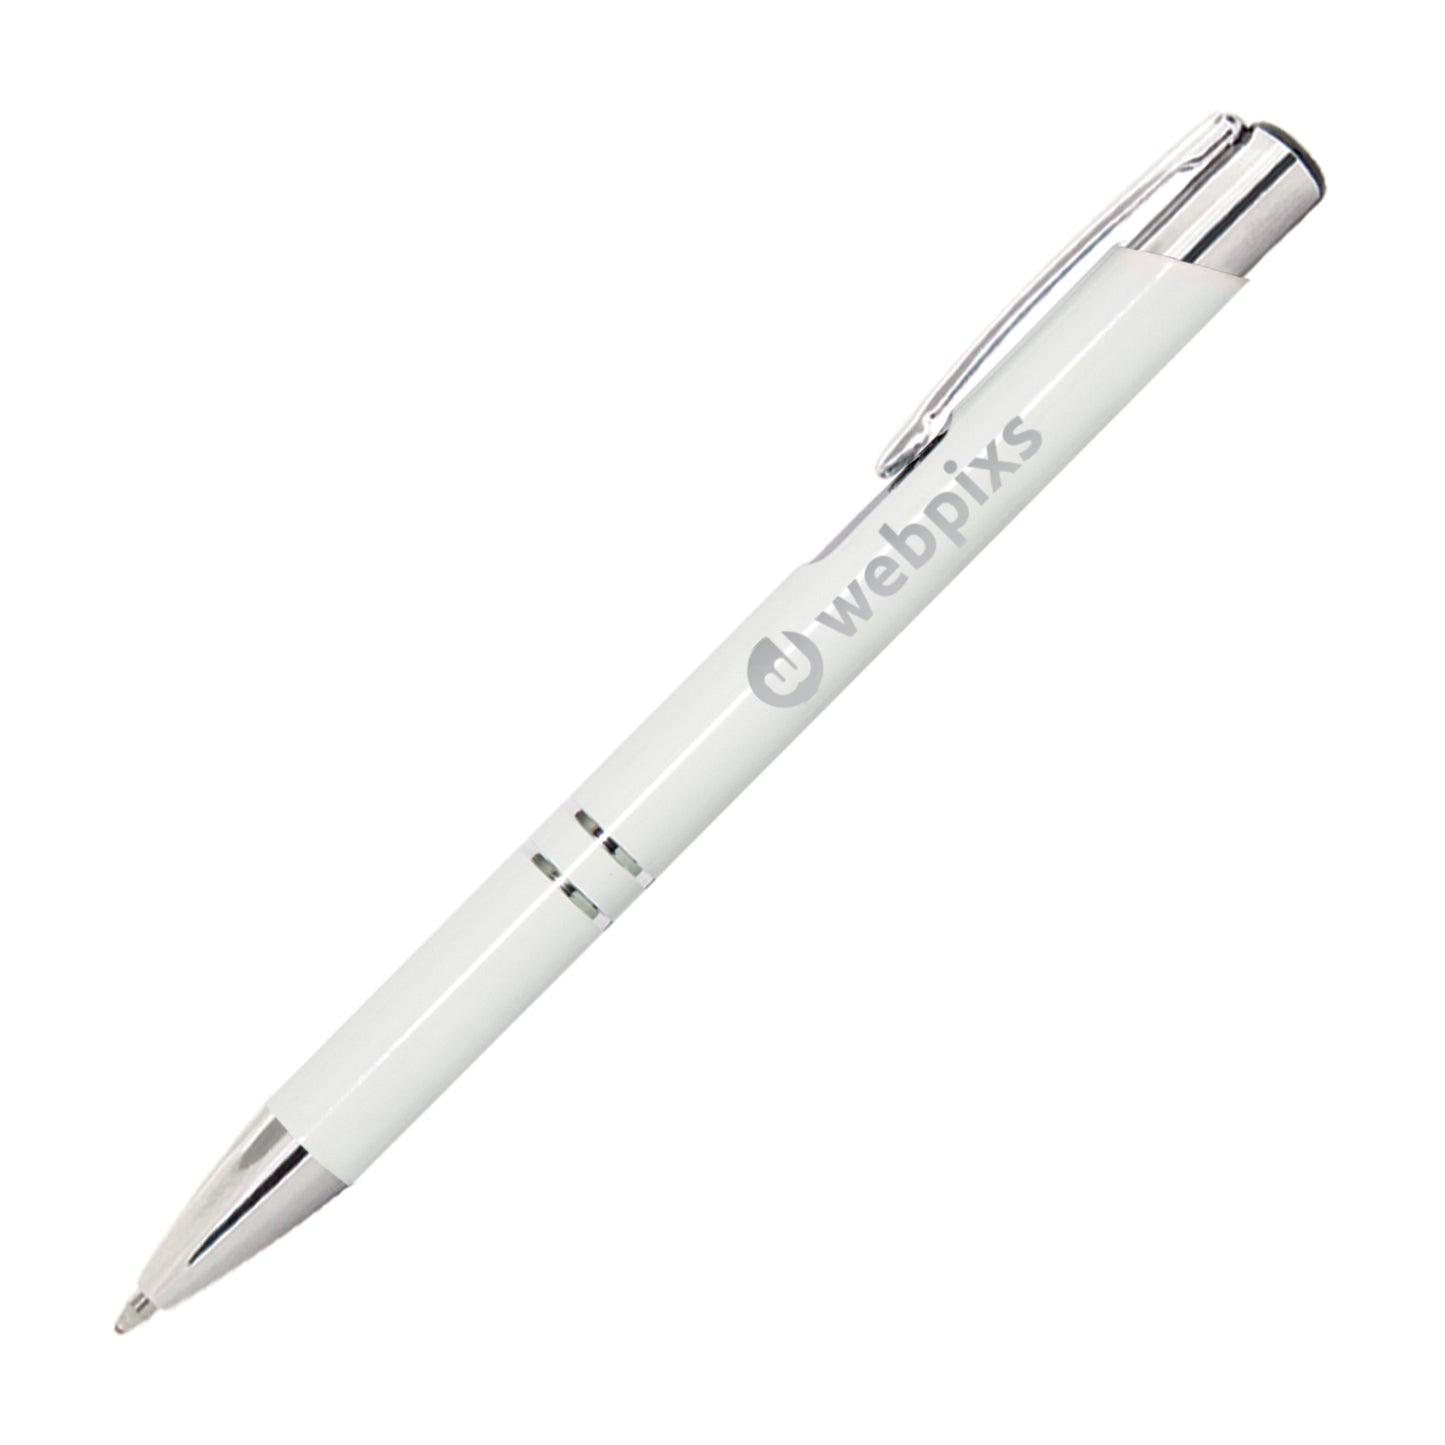 Beaufort Metal Pen Shiny